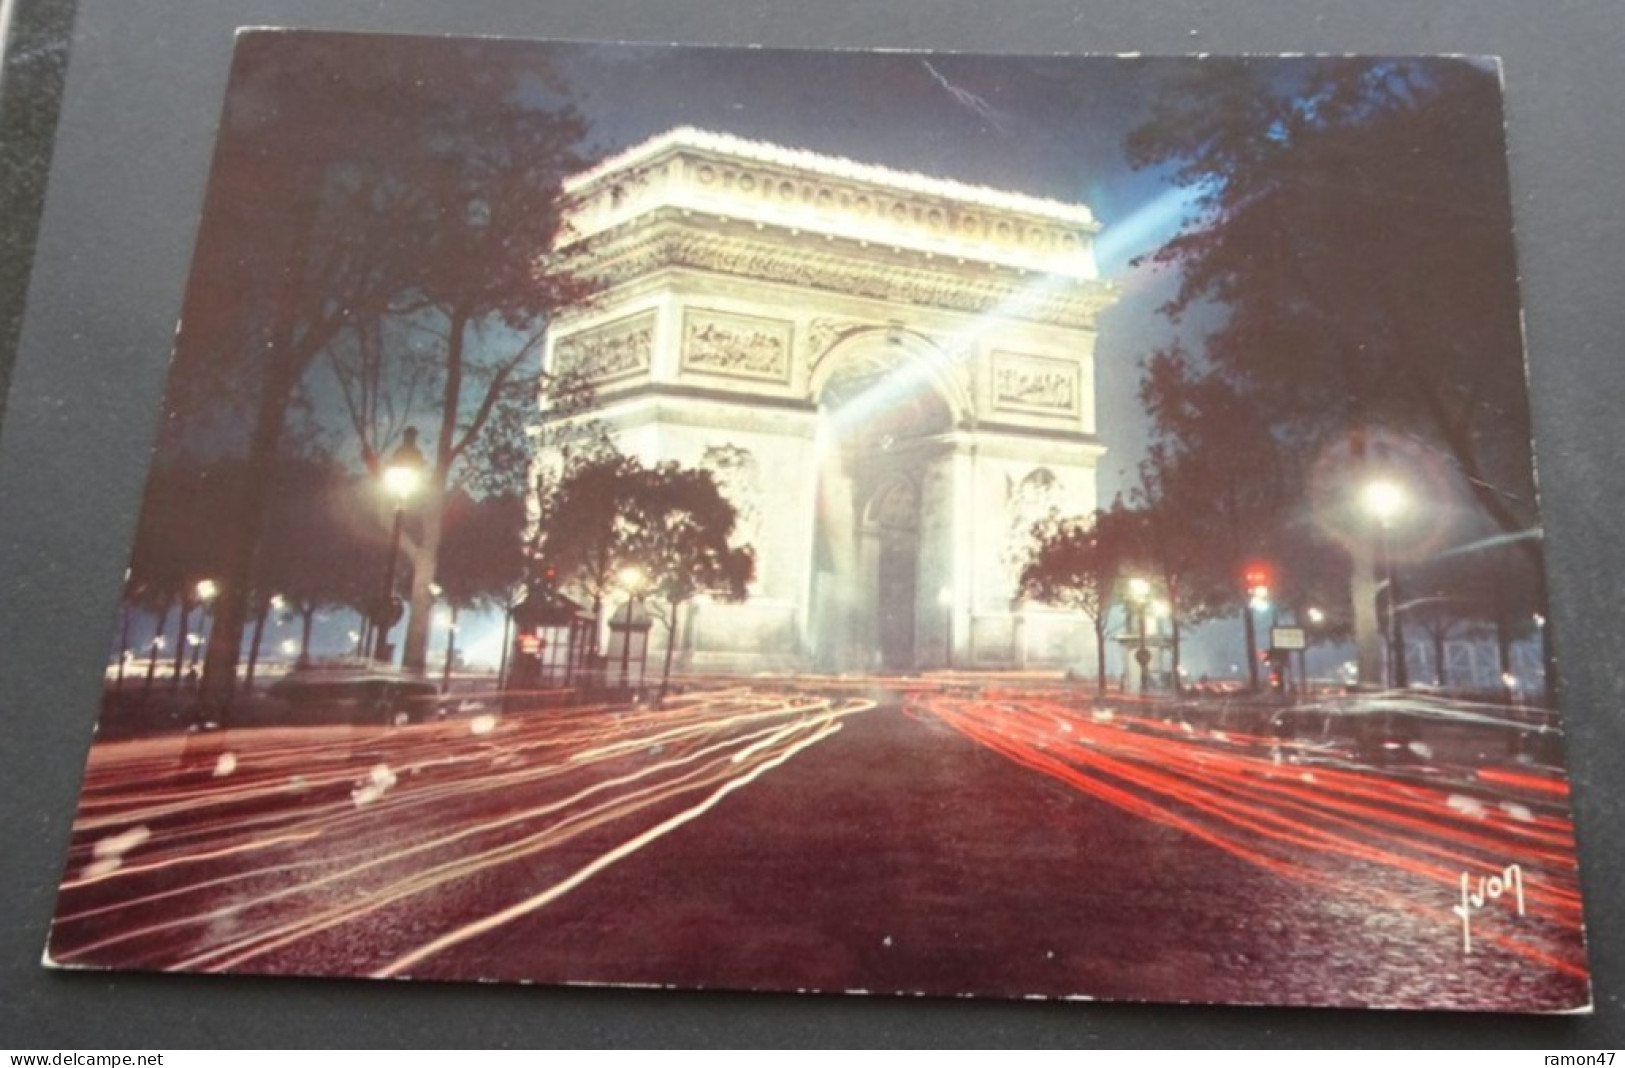 Paris En Flânant - L'Arc De Triomphe Illuminé - Editions D'art Yvon - Paris La Nuit